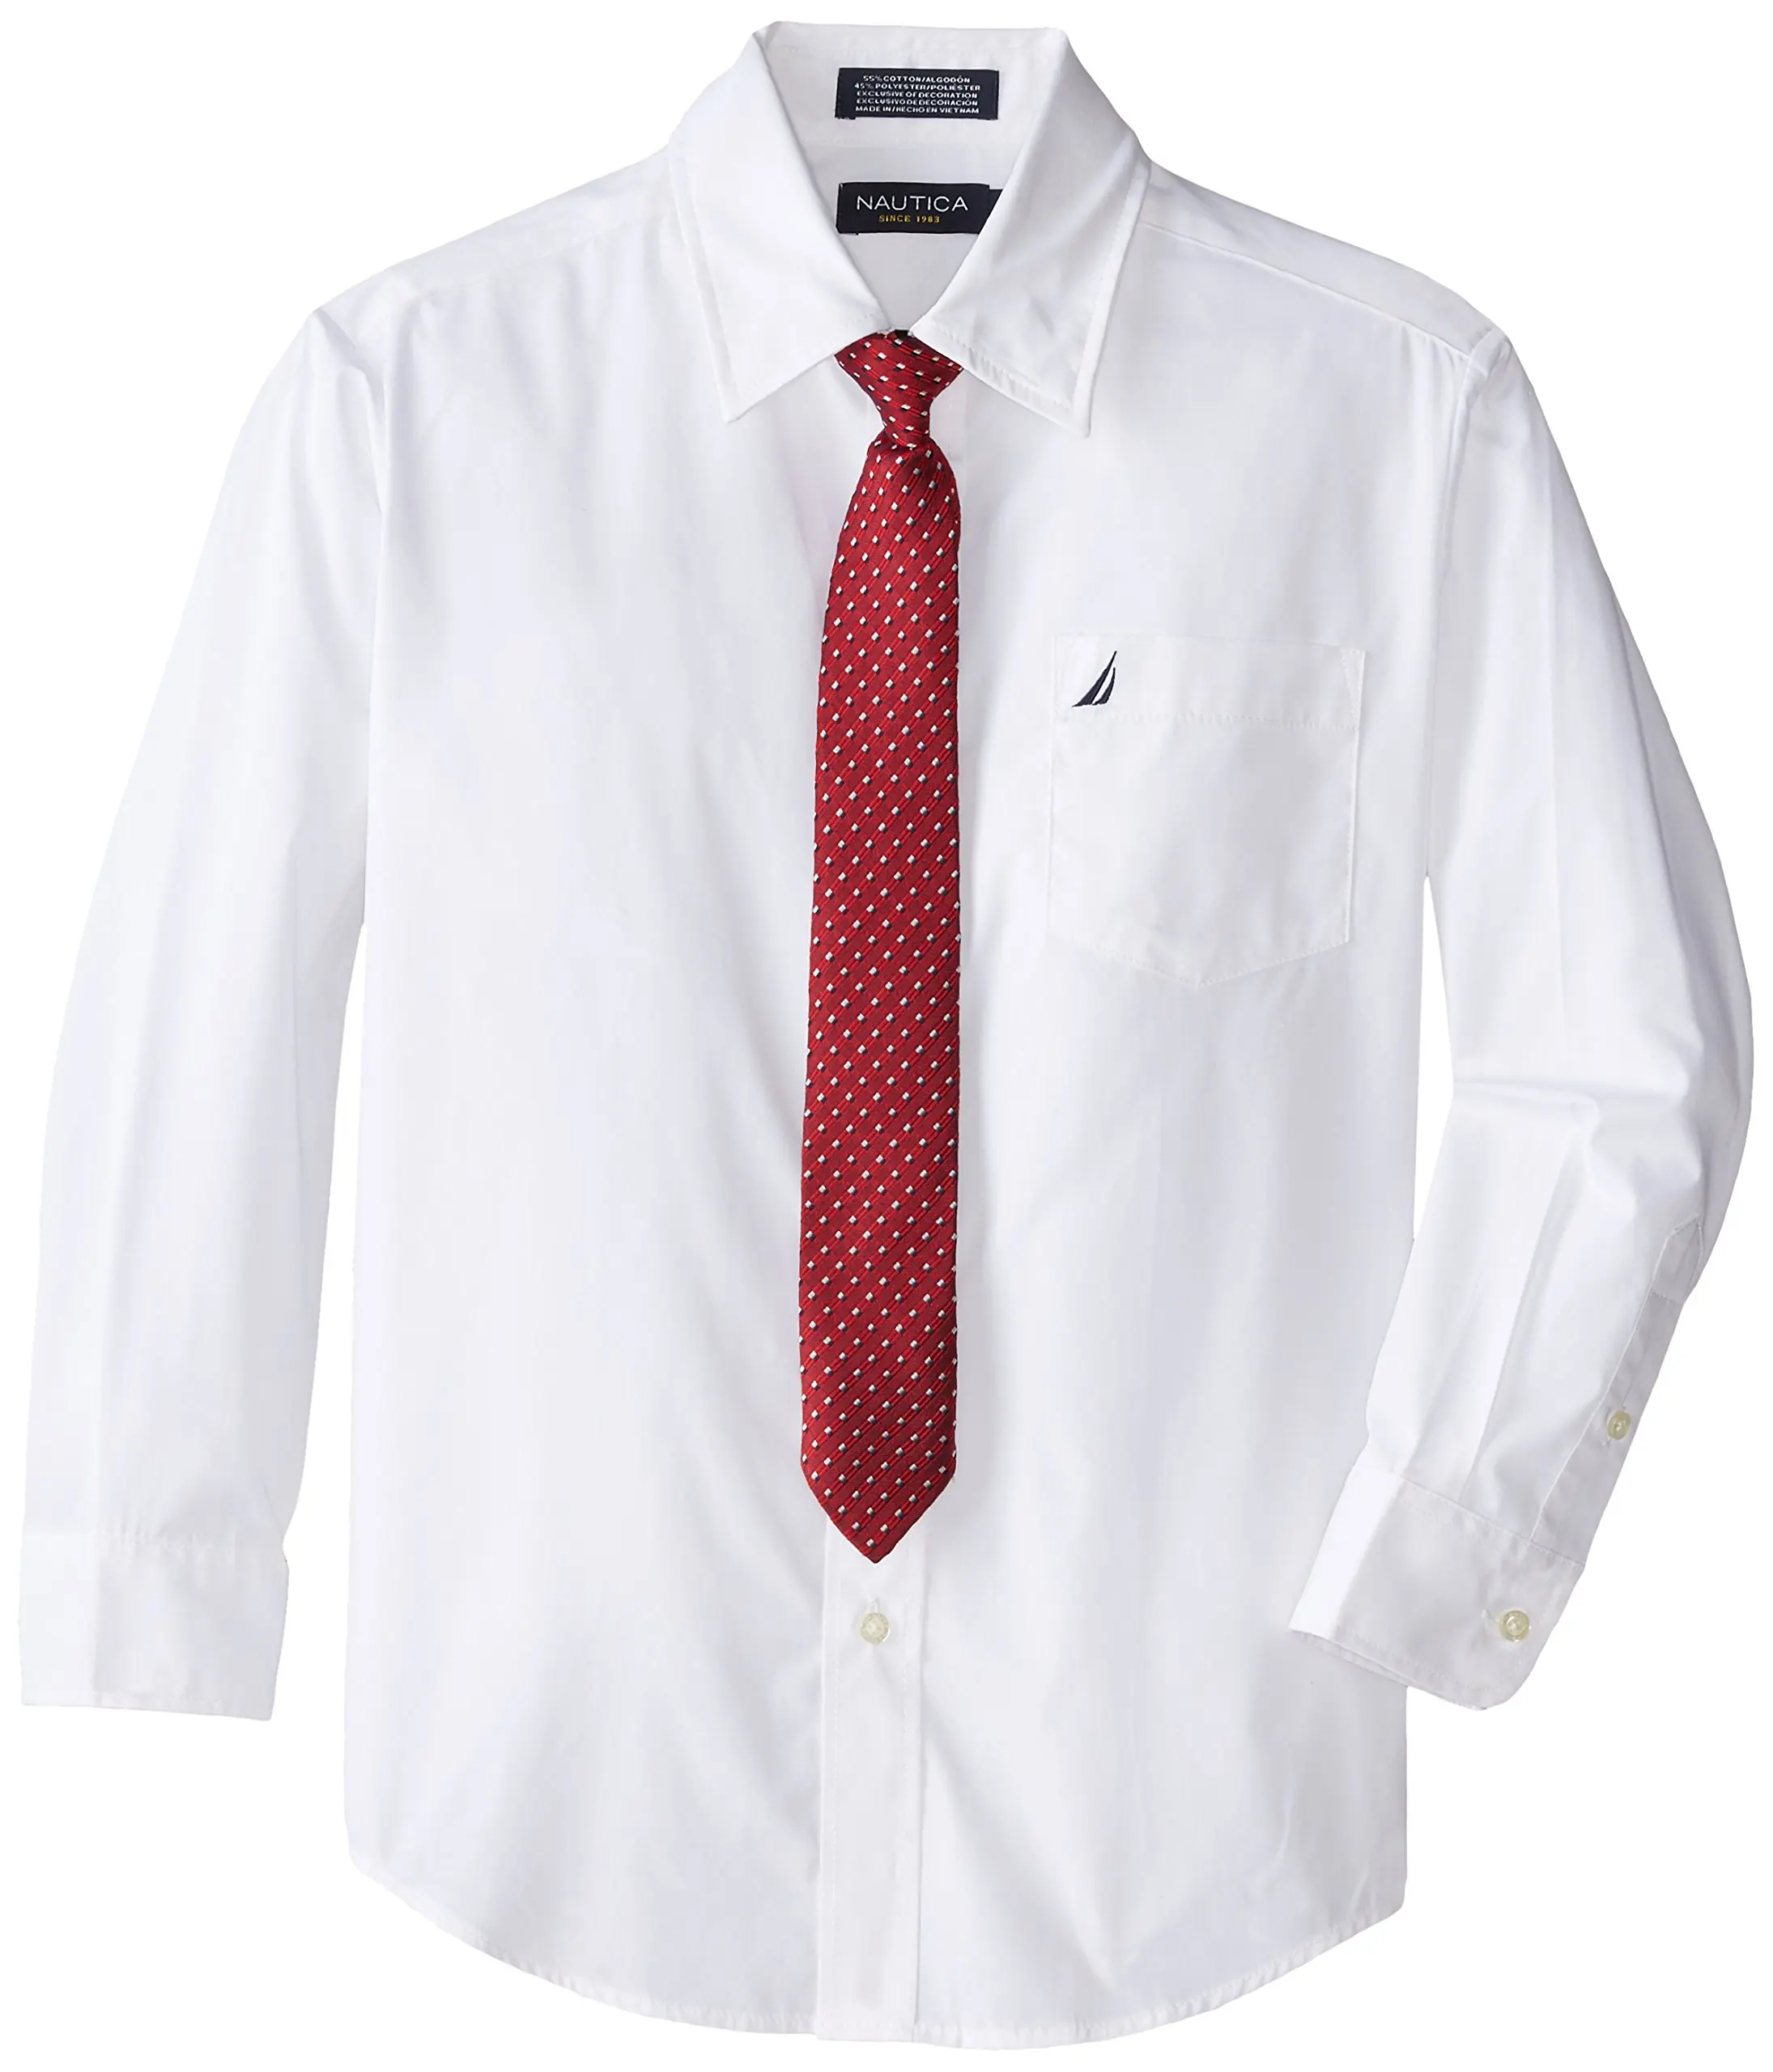 Красный галстук на белой рубашке